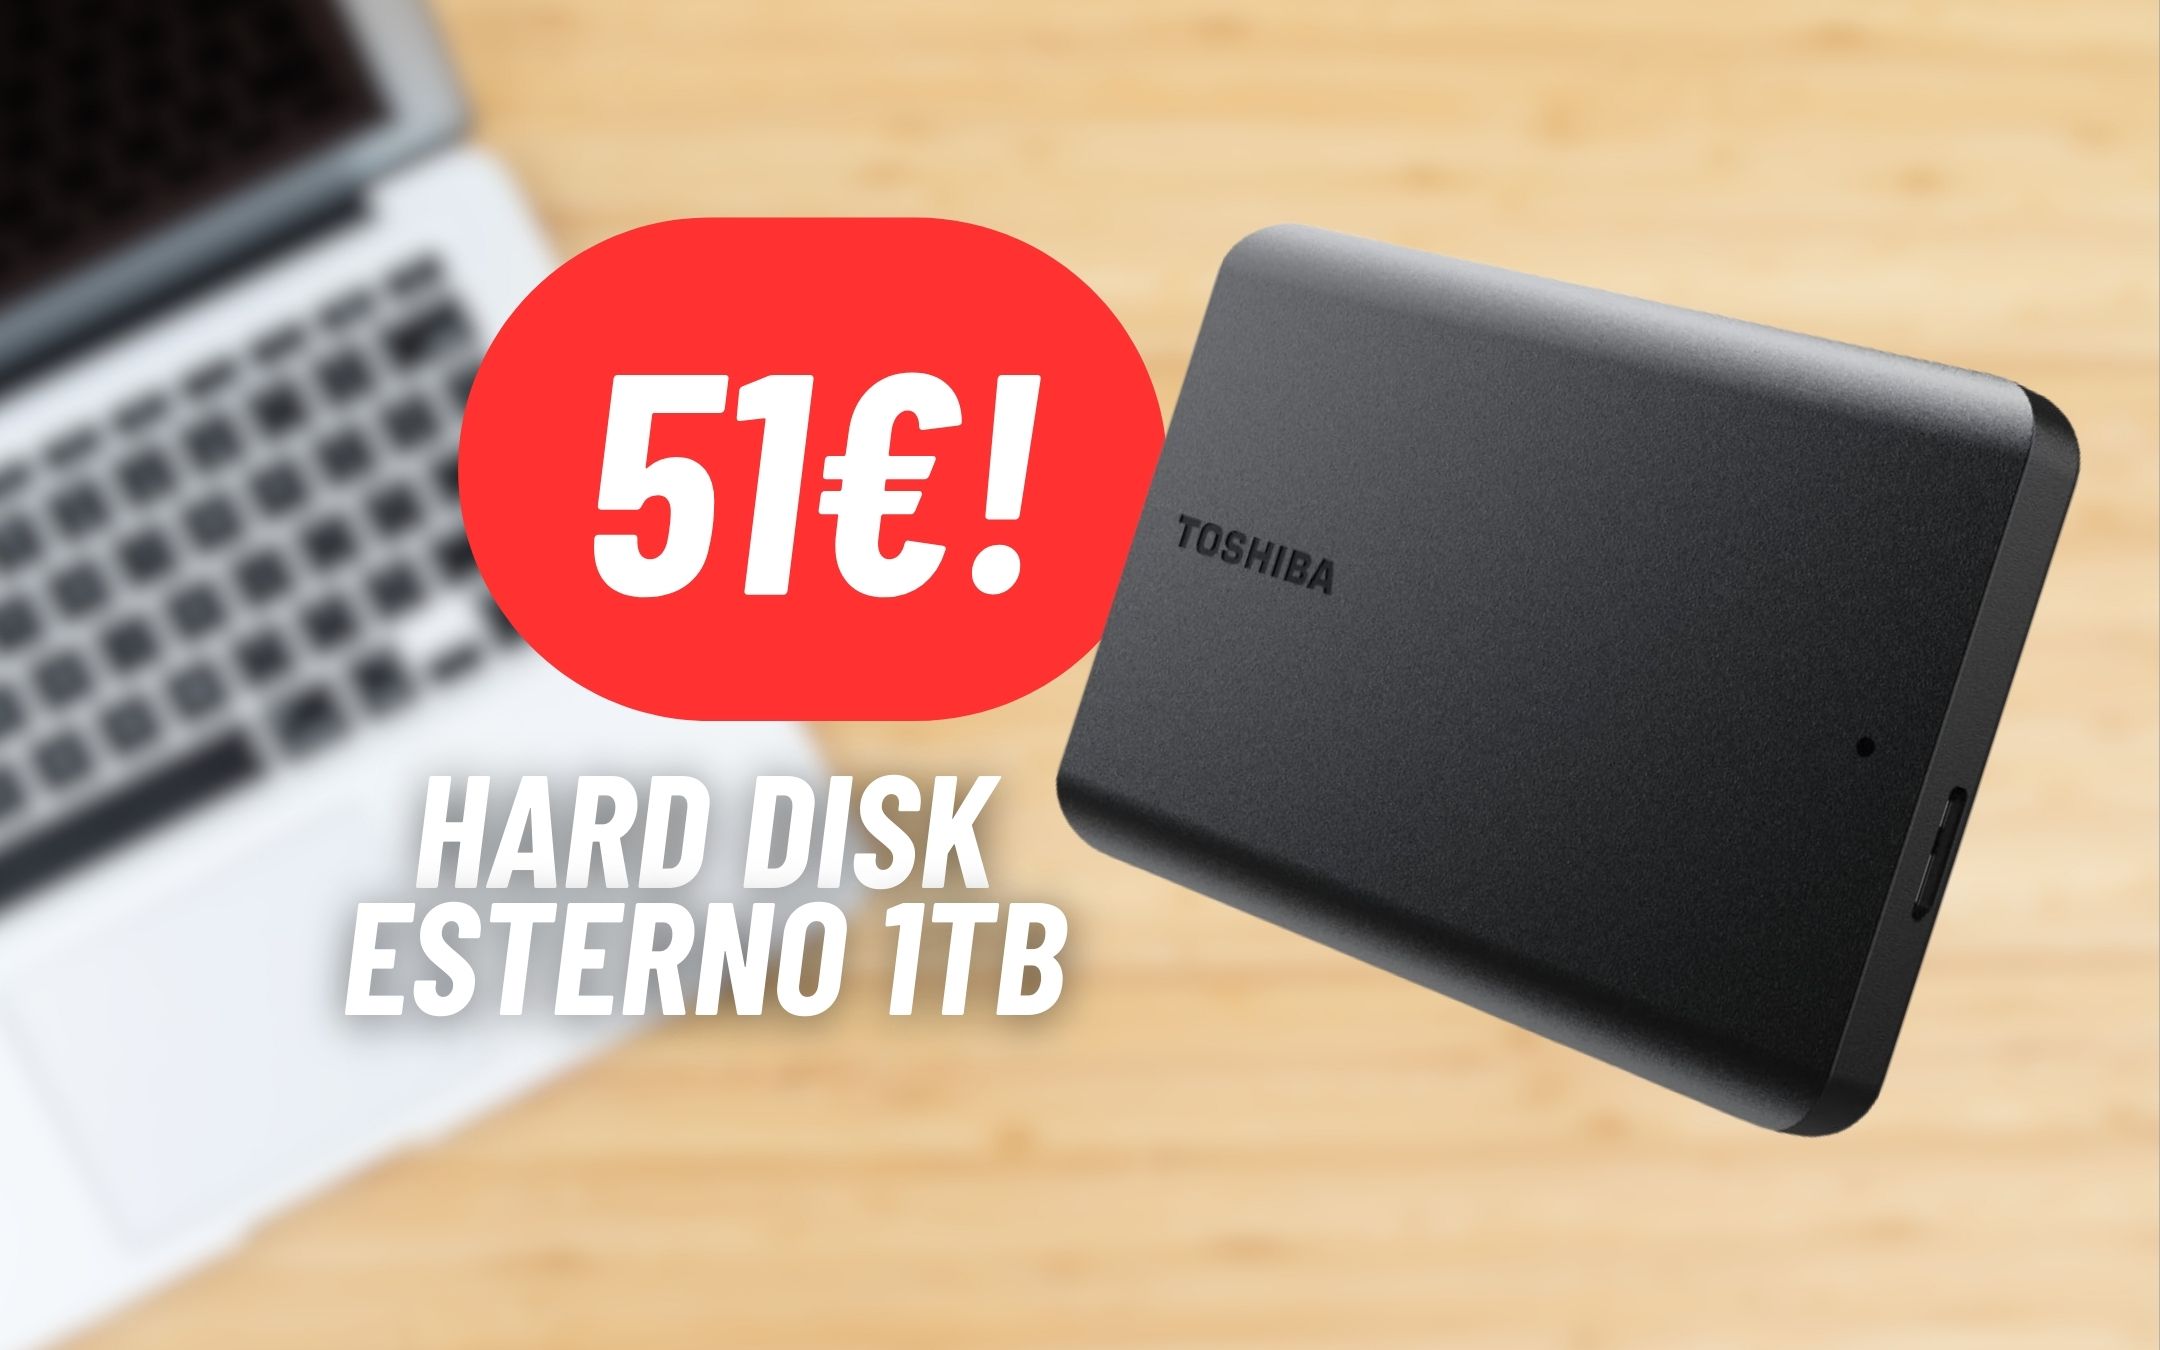 Hard Disk Esterno portatile Toshiba da 1TB a 51€ con la MAXI PROMO